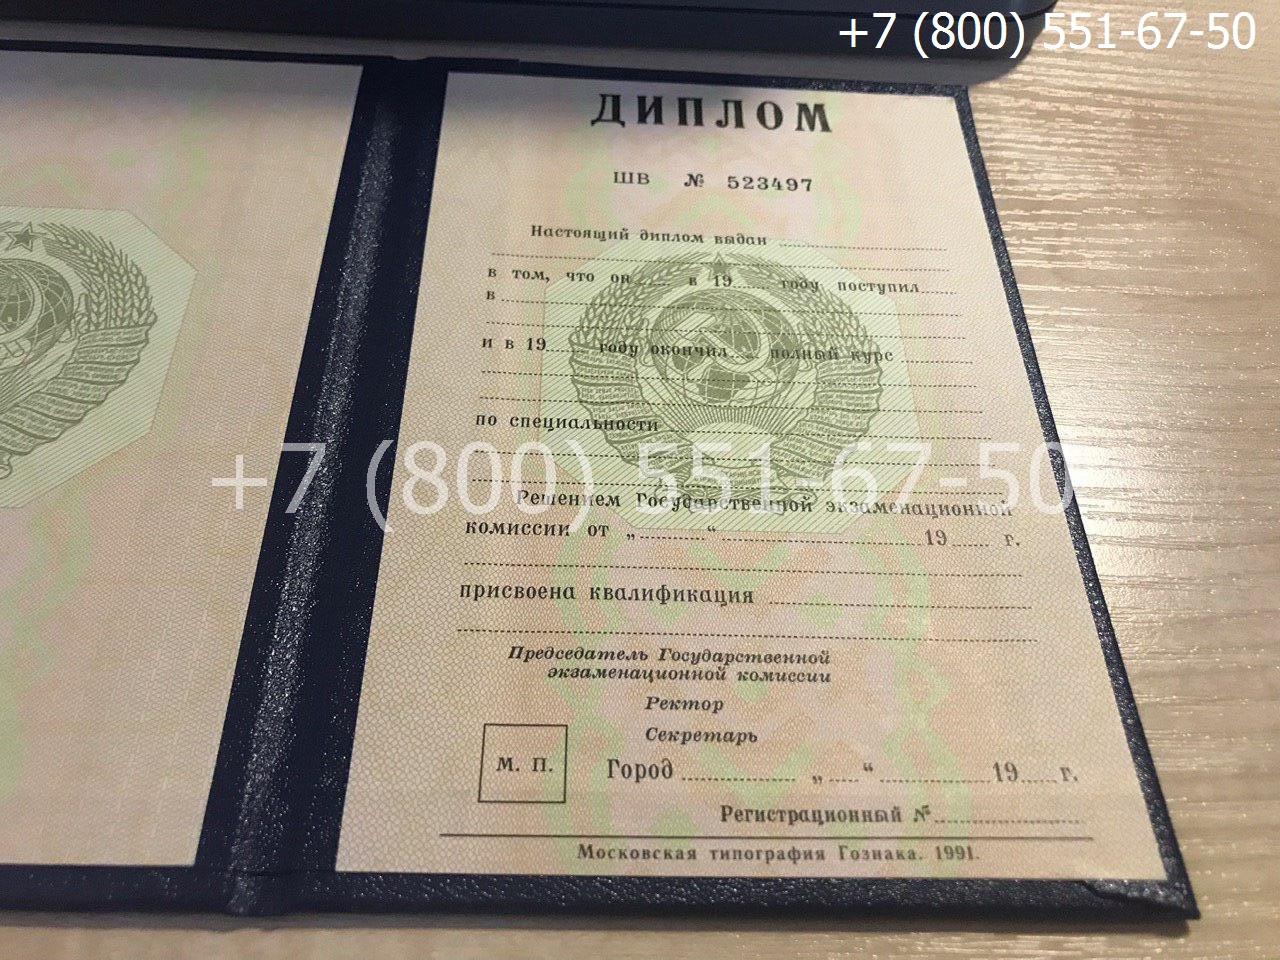 Диплом ВУЗа СССР, образец, титульный лист-1